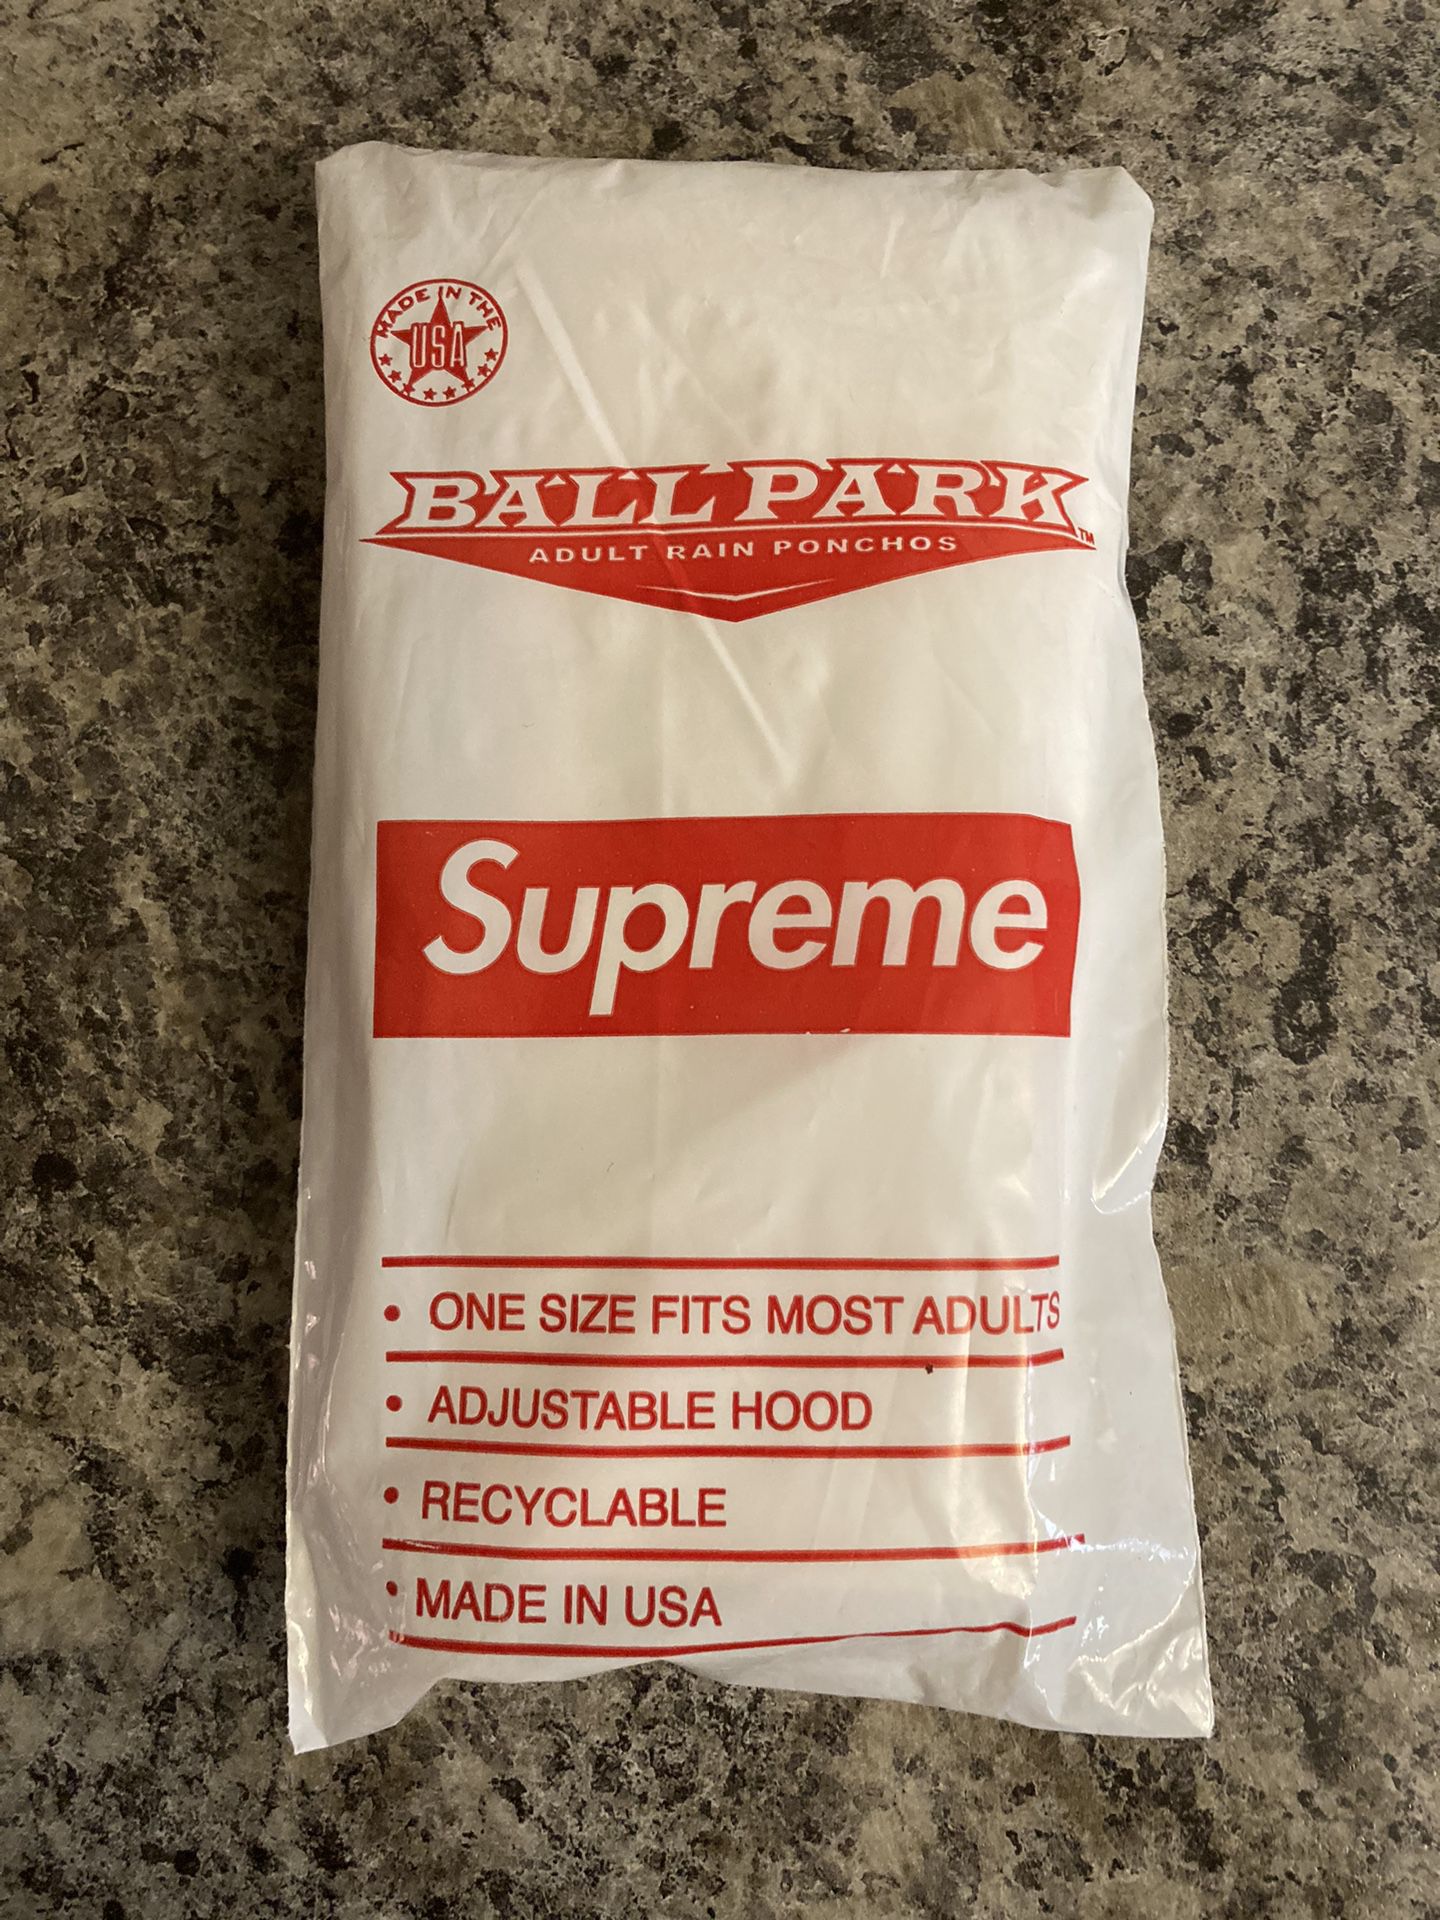 Supreme Ballpark Poncho Brand New Sealed